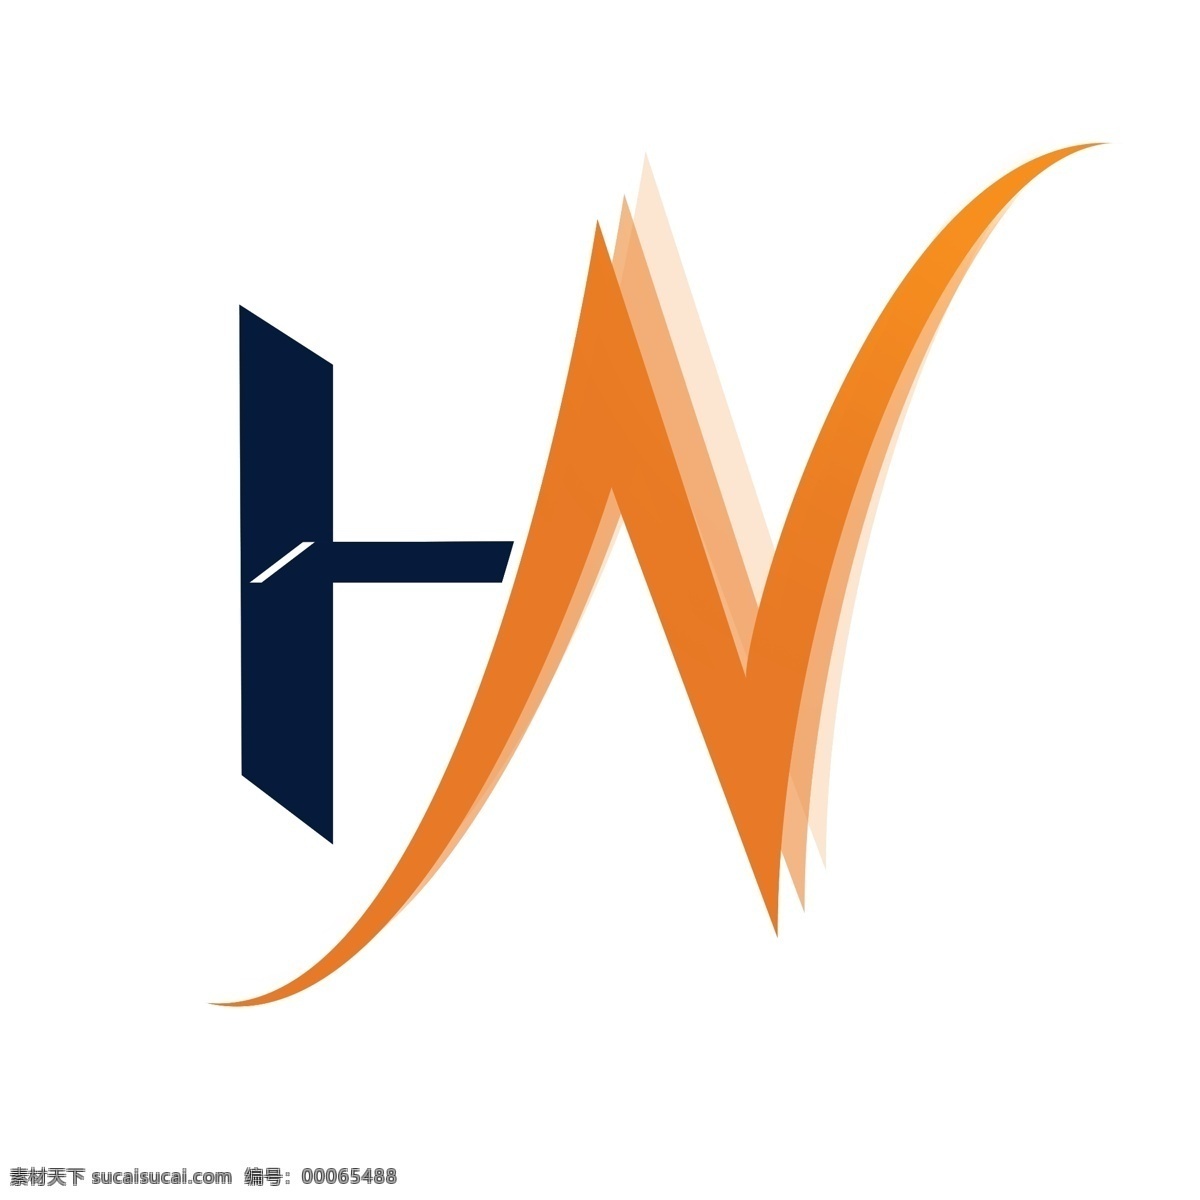 公司 logo 分层 公司logo 简约 企业标志 源文件 字母hn psd源文件 logo设计